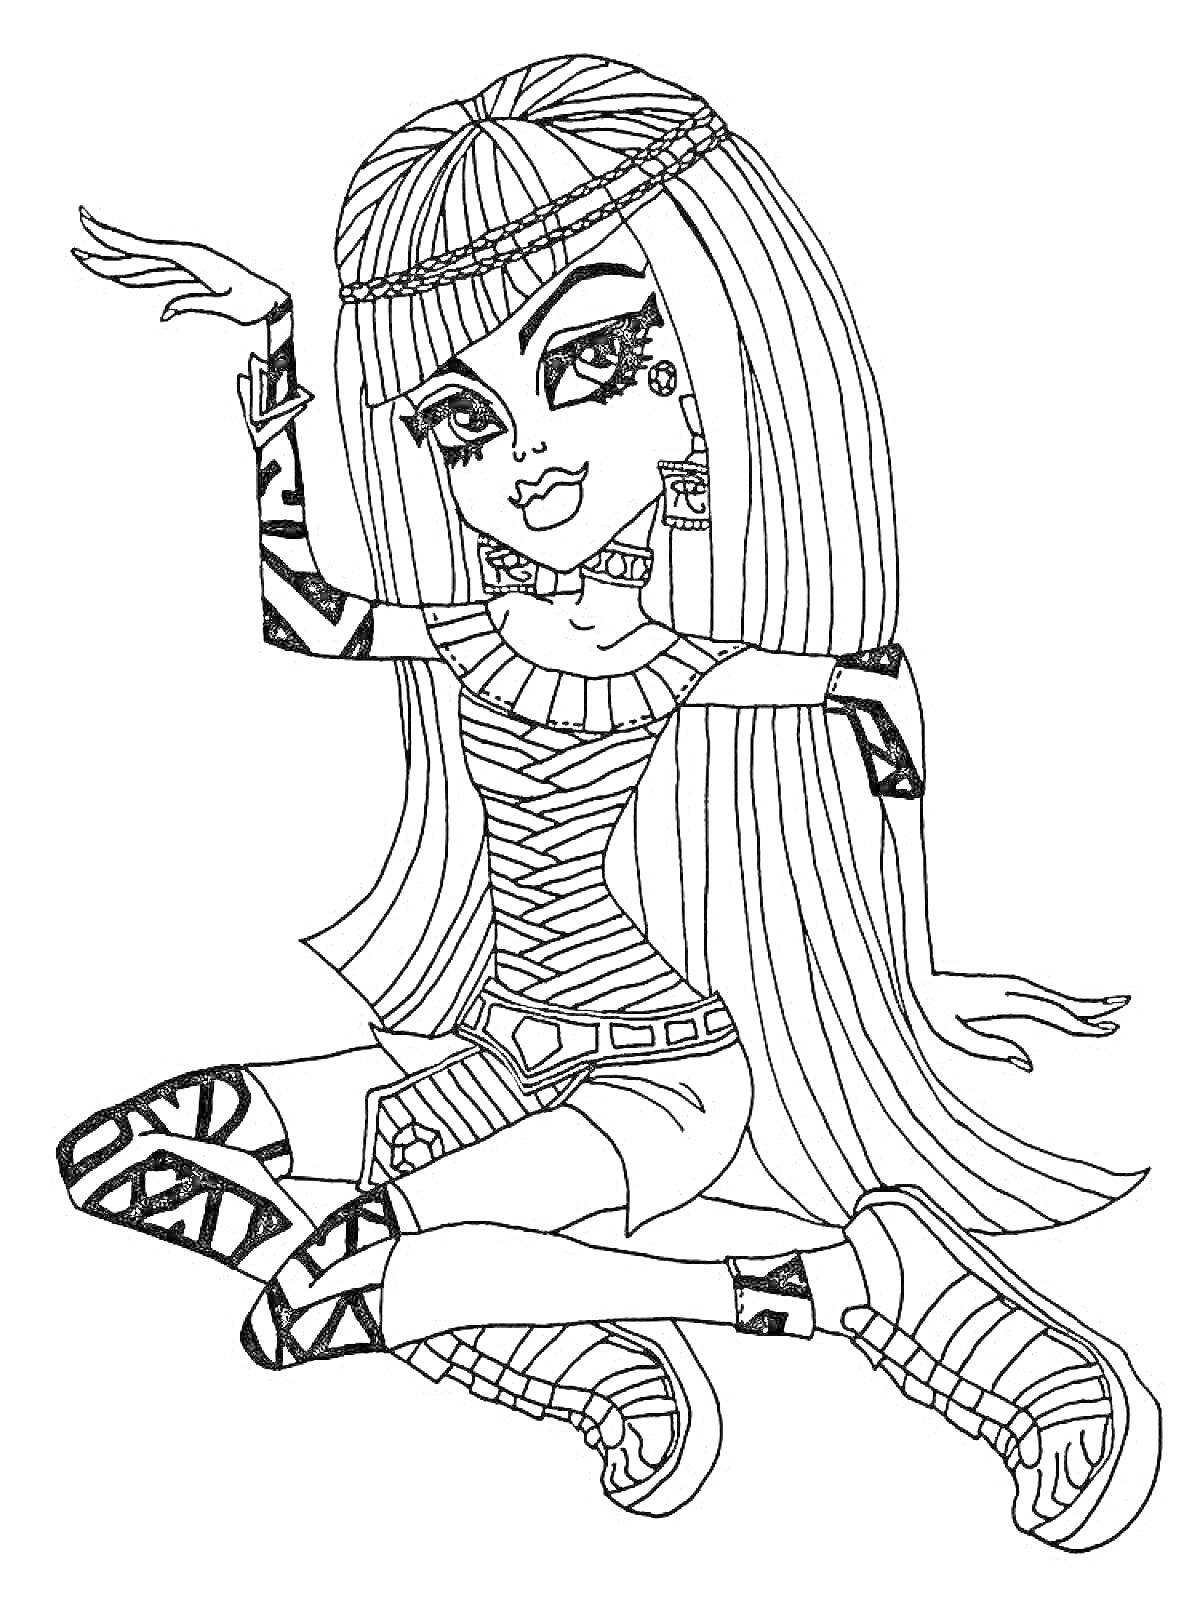 Девушка из Монстер Хай с длинными волосами, в полосатом платье, татуировками и в обуви с узором